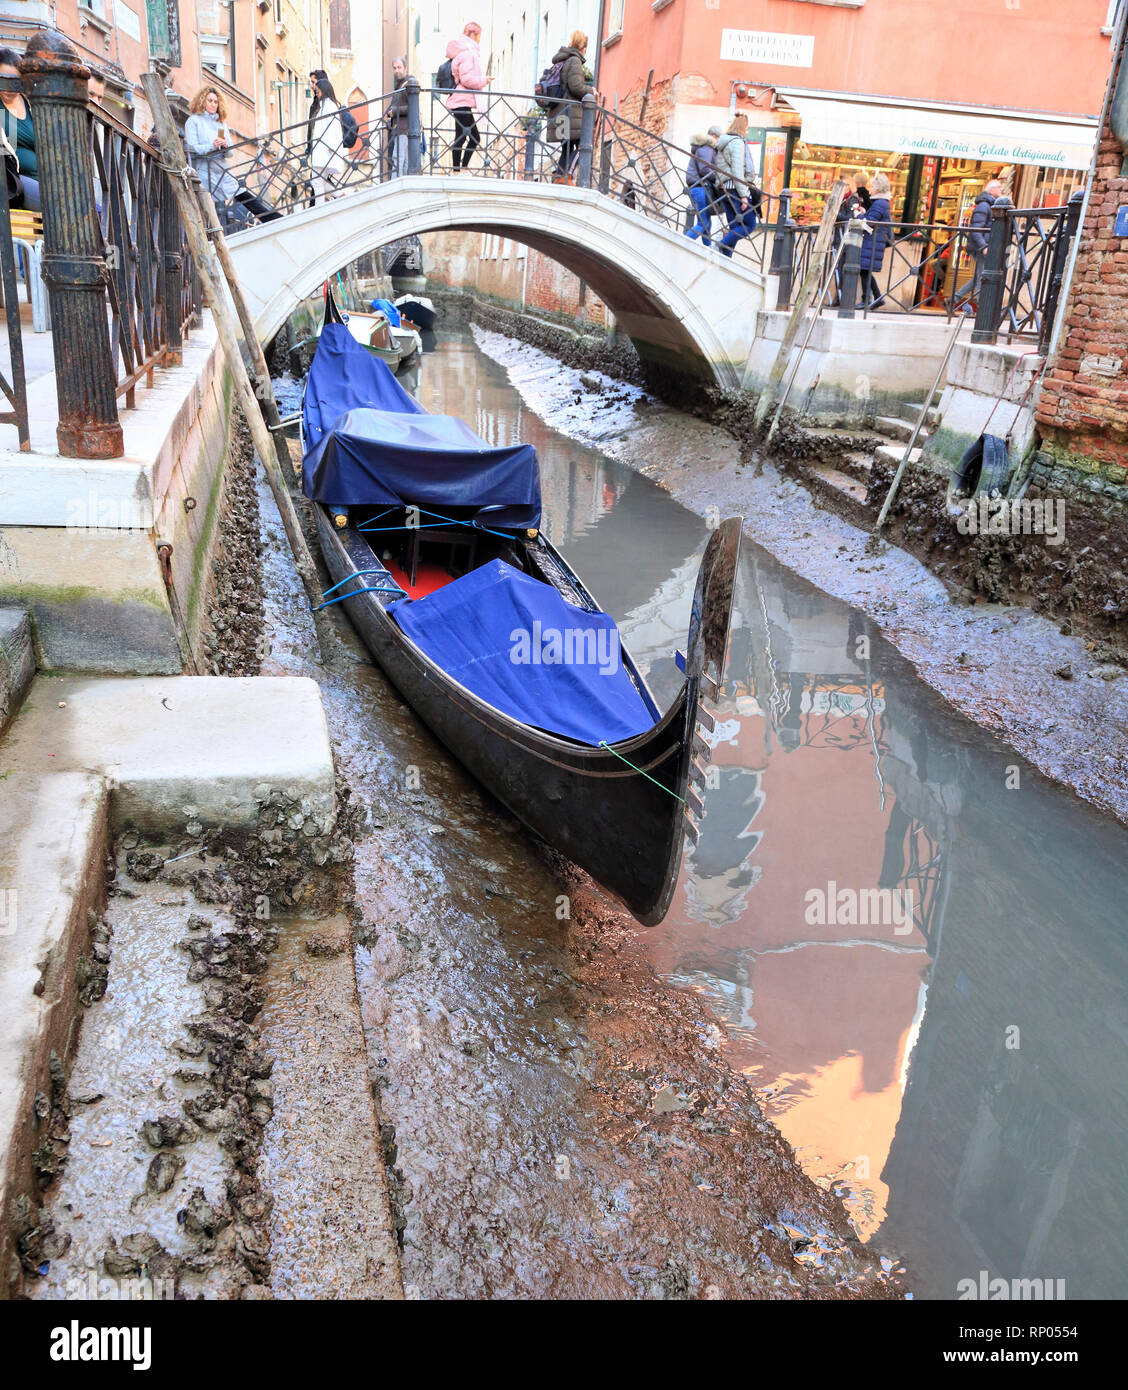 Acqua bassa un Venezia, Bassa marea a Venezia. Foto Stock